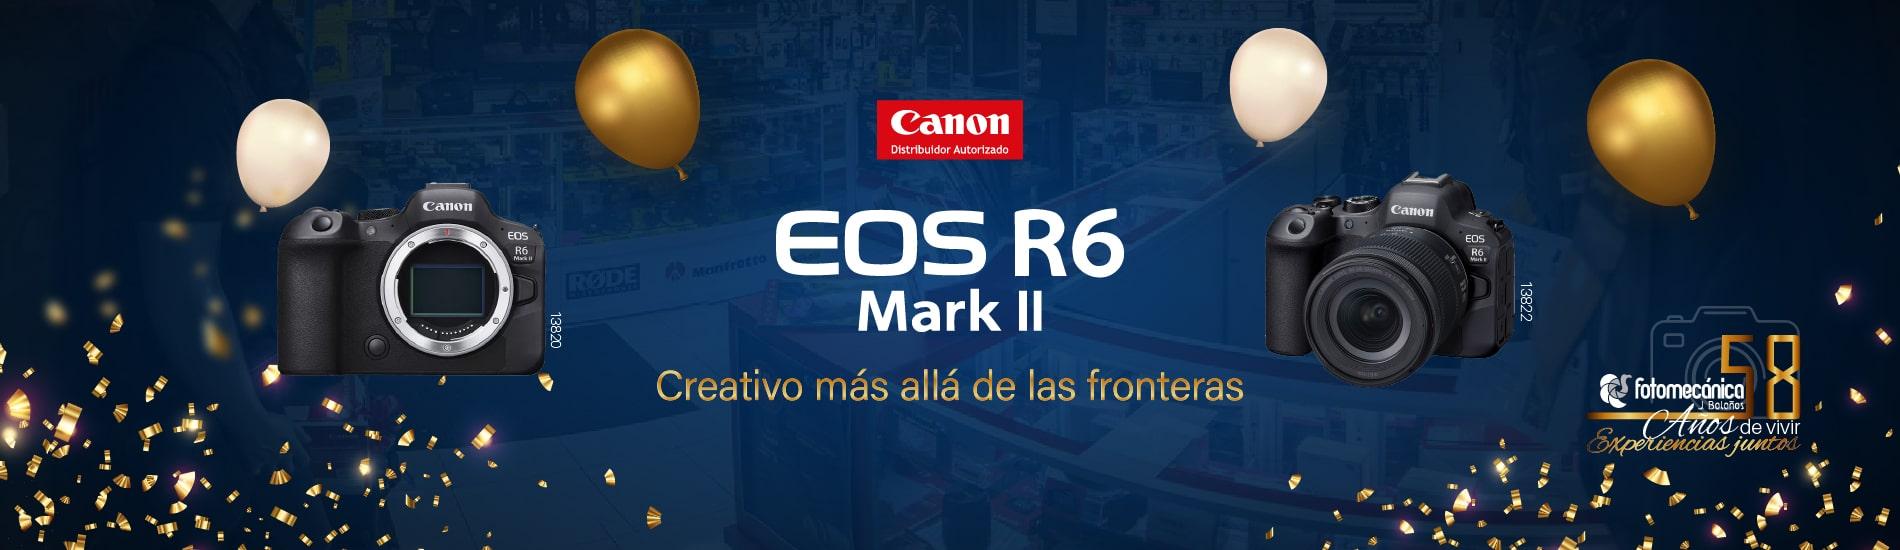 Canon EOS R6 Mark II. Aniversario 58 Fotomecánica J. Bolaños